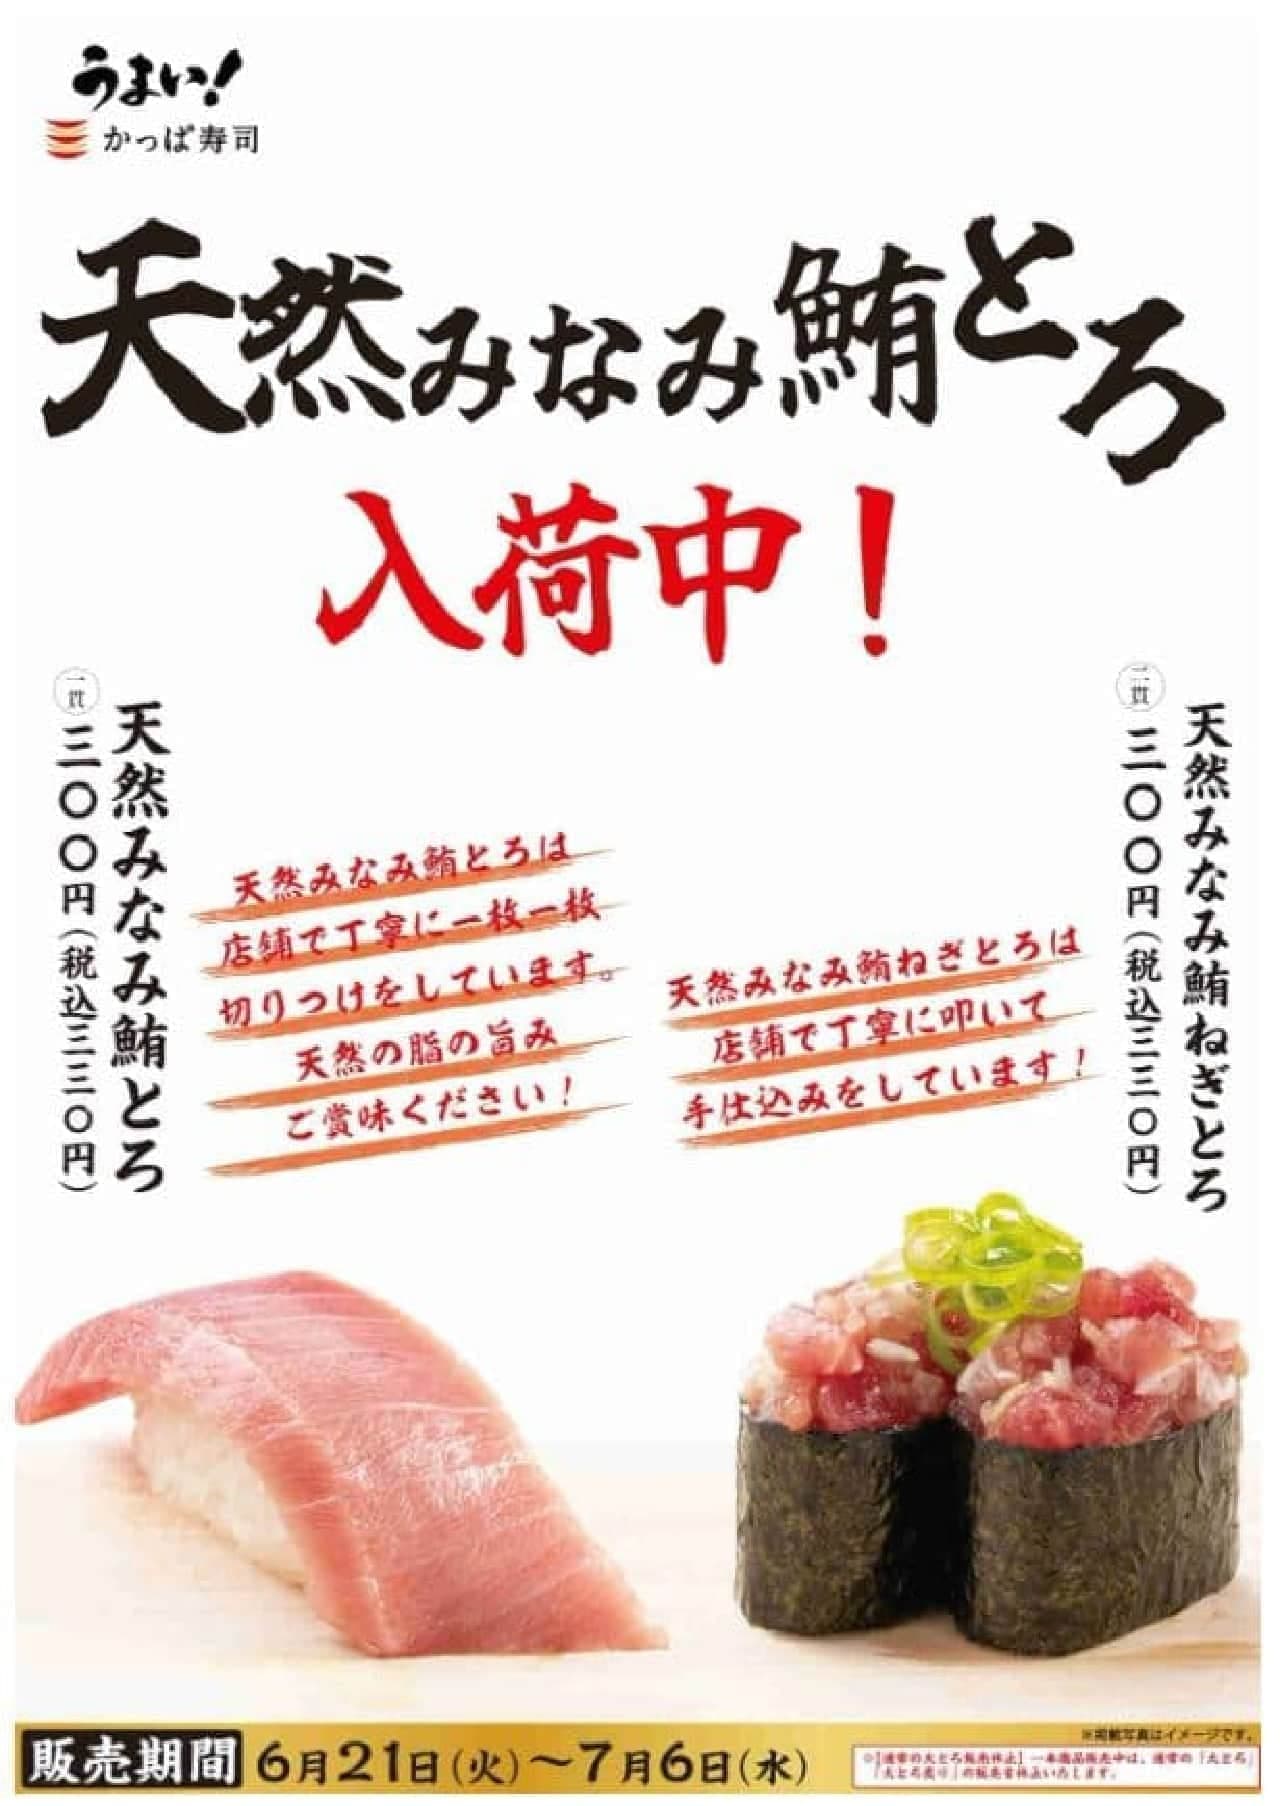 Kappa Sushi "Natural Minami Tuna Tuna Tuna" and "Natural Minami Tuna Negi-Tuna